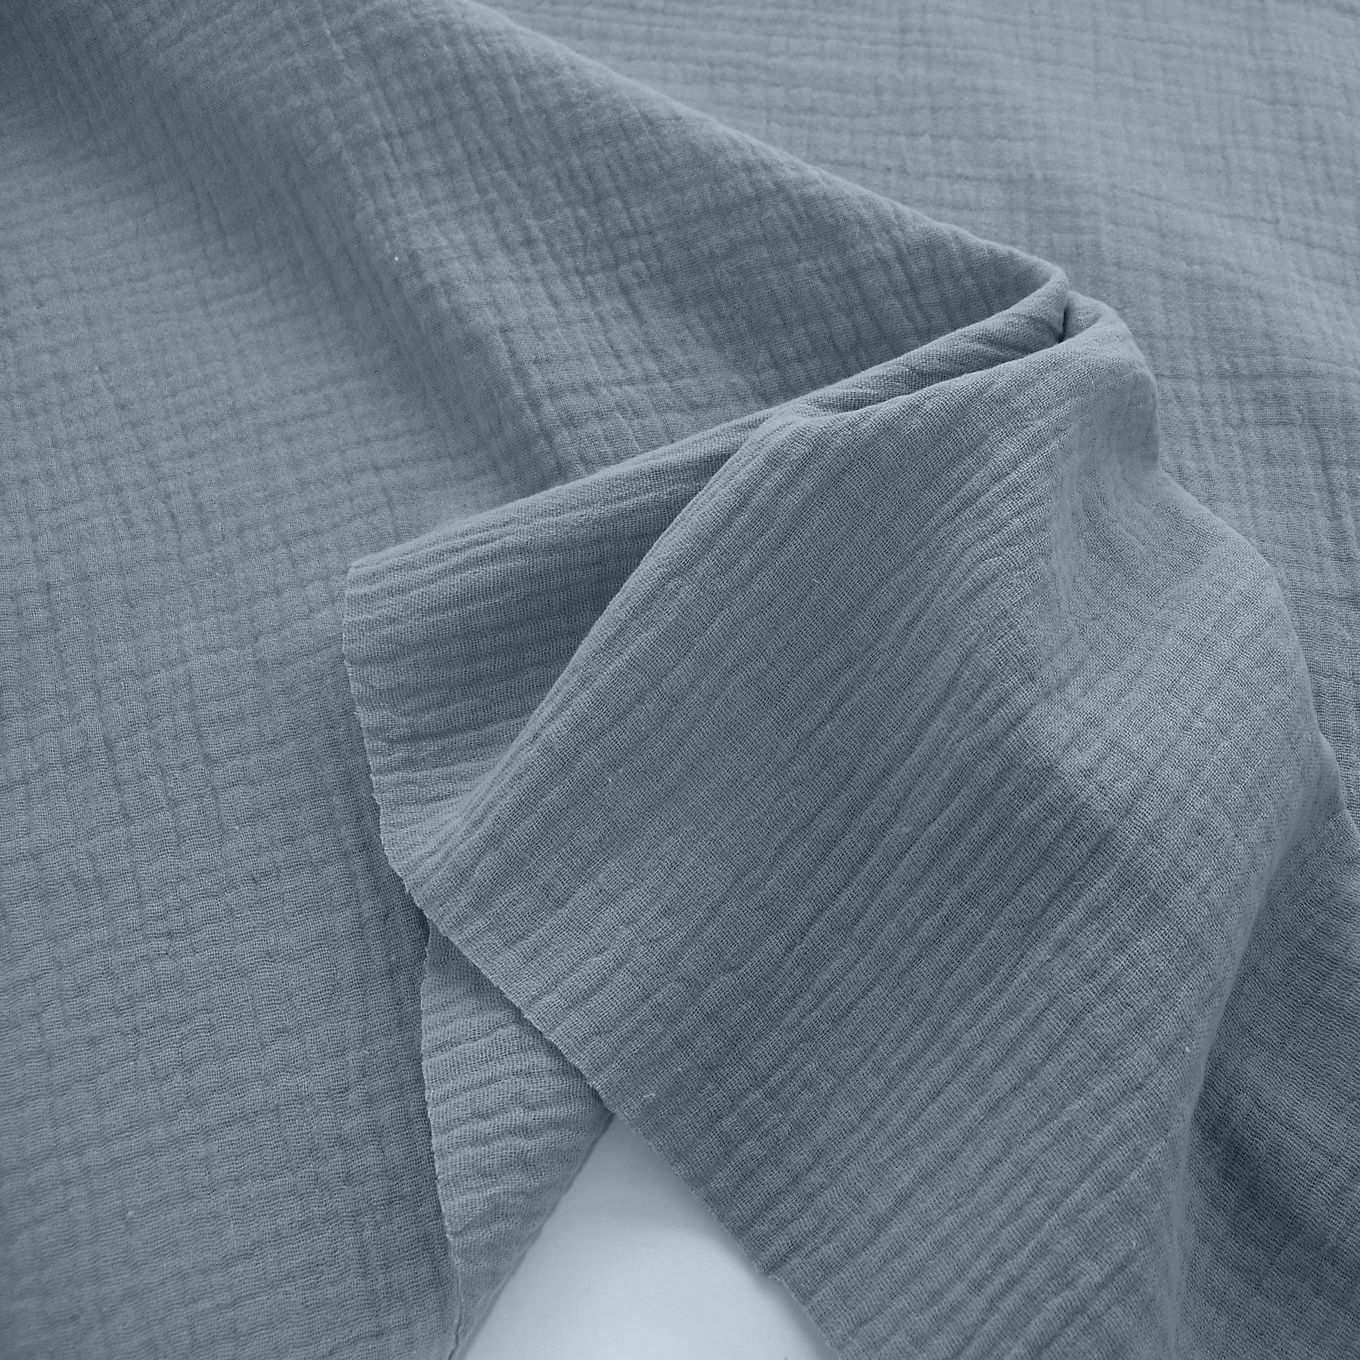 blau grauer Musselin/Gauze weicher Baumwollstoff zweilagig Kleider-Blusenstoff